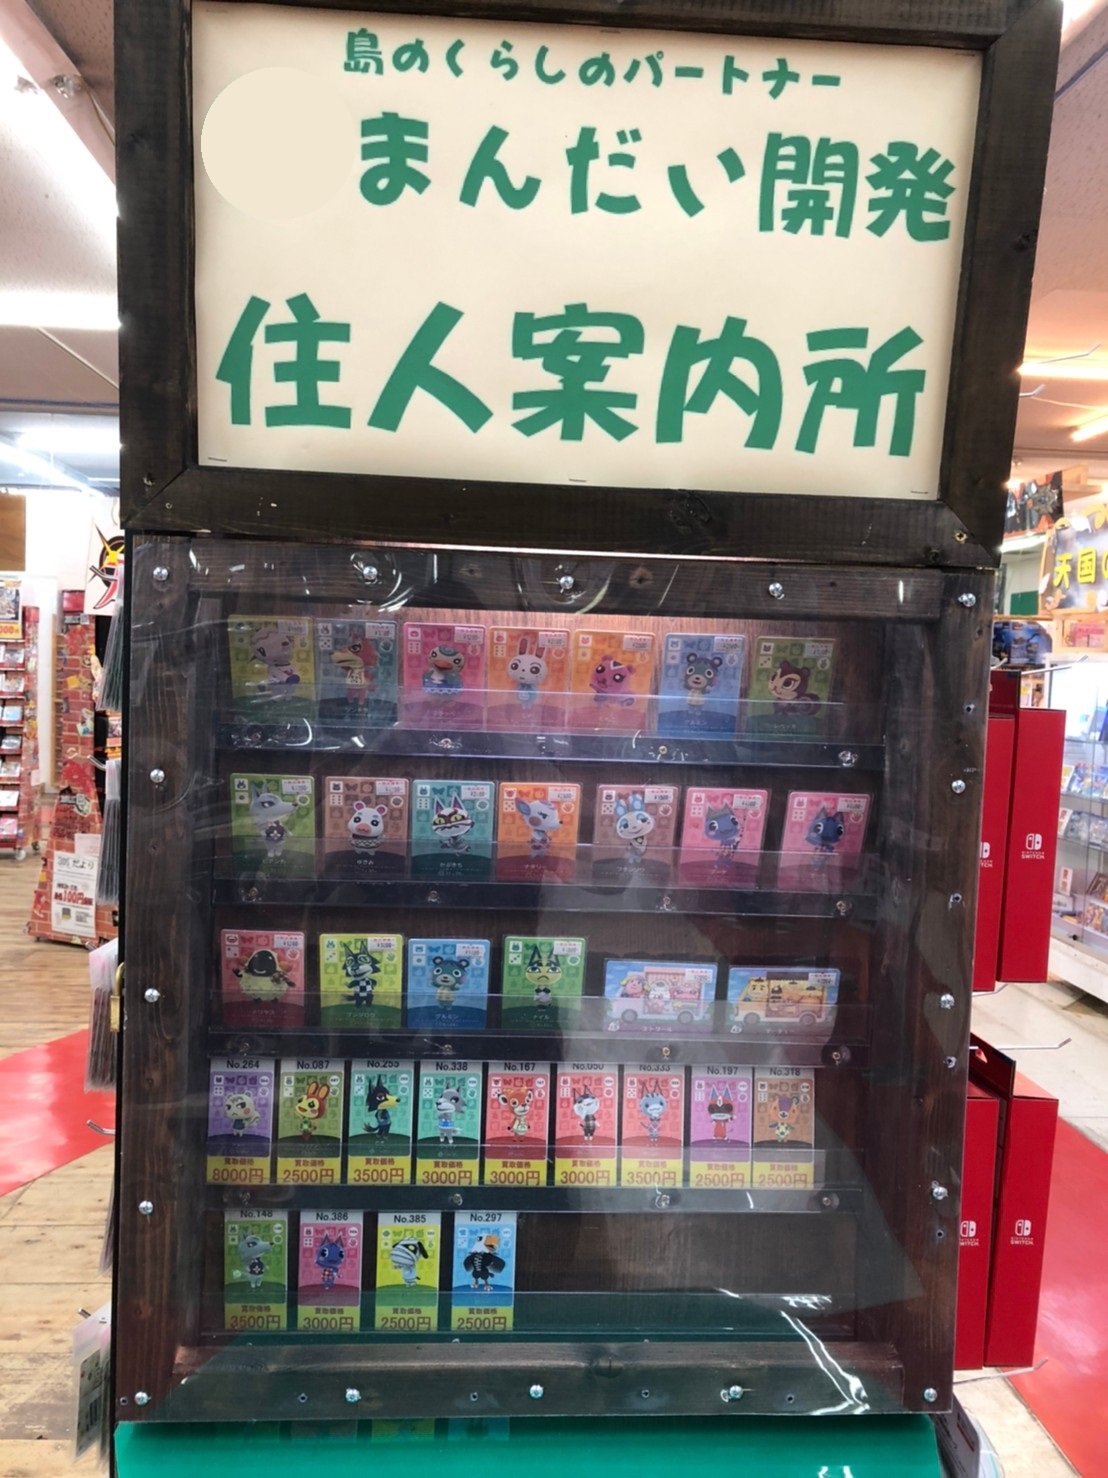 ゲーム どうぶつの森amiiboカード 売り場が新しくキレイになりました 艸 買取も募集中です 万代書店 山梨本店